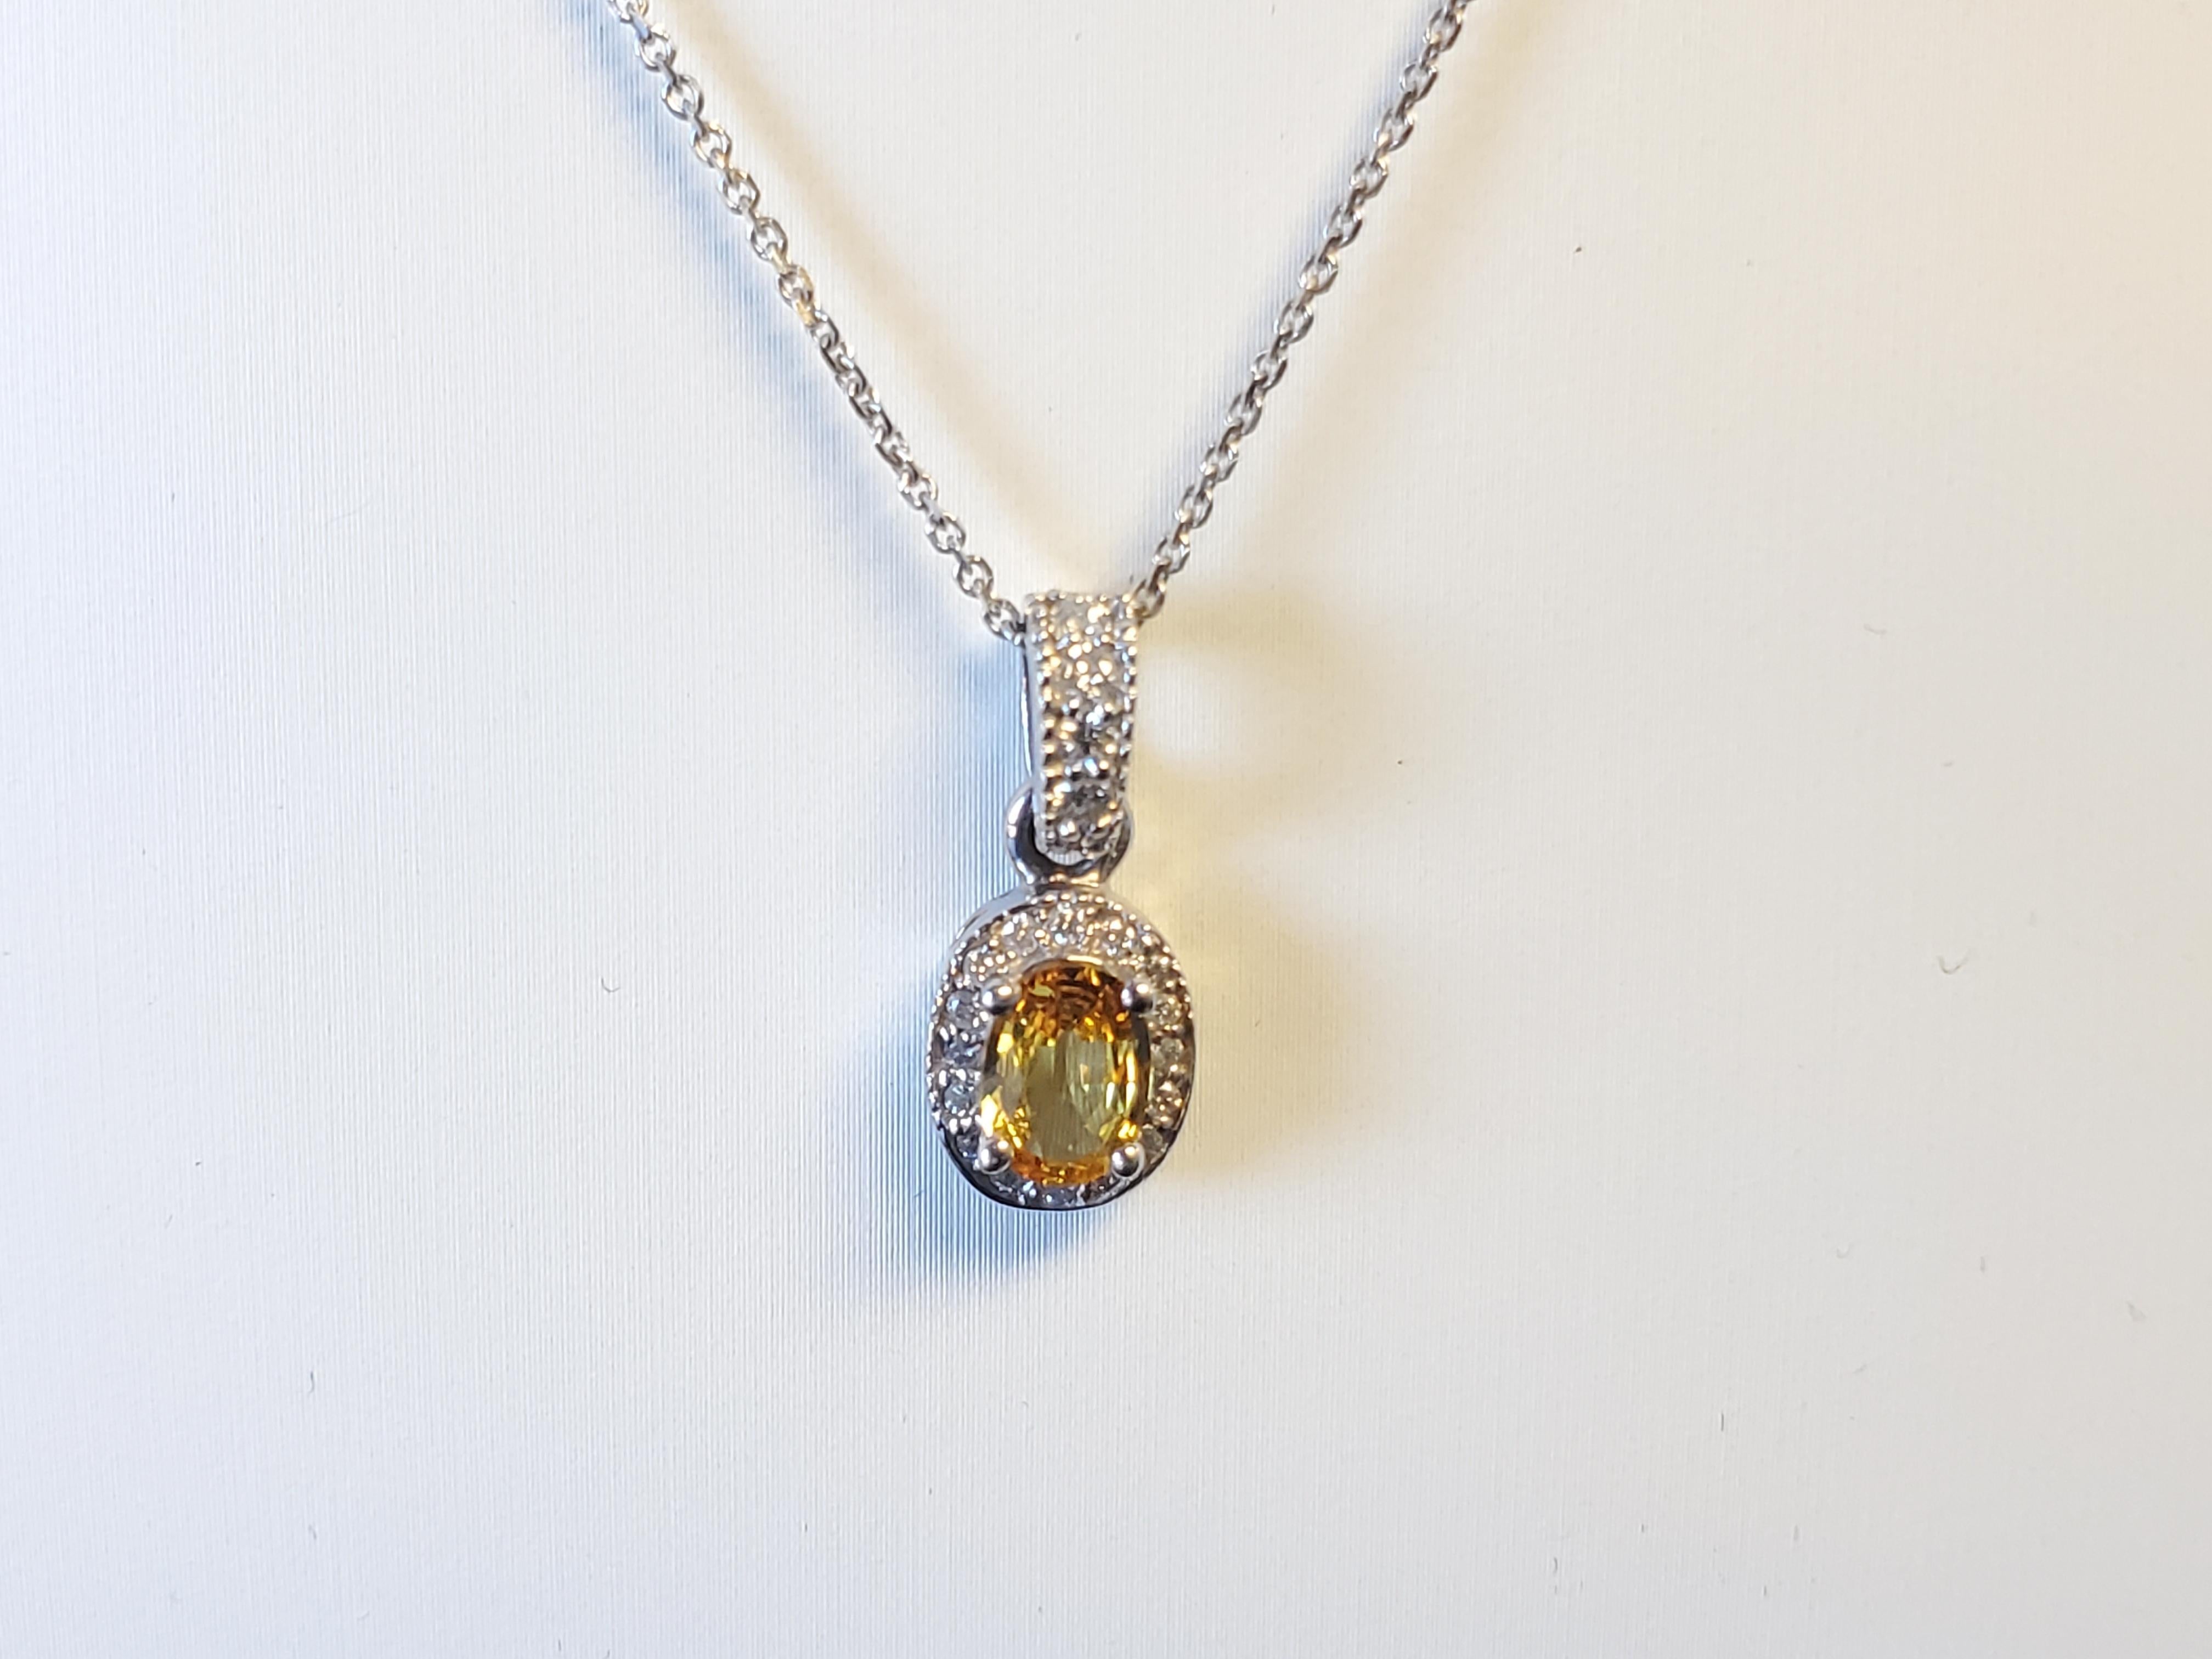 Whiting est un collier de succession en or blanc 14k avec saphir ovale et diamant. La pièce est en très bon état et prête à être exposée. Le collier présente un beau saphir jaune ovale de 7x5mm d'environ 1ct avec .24tcw G-H I1 qualité diamants ronds